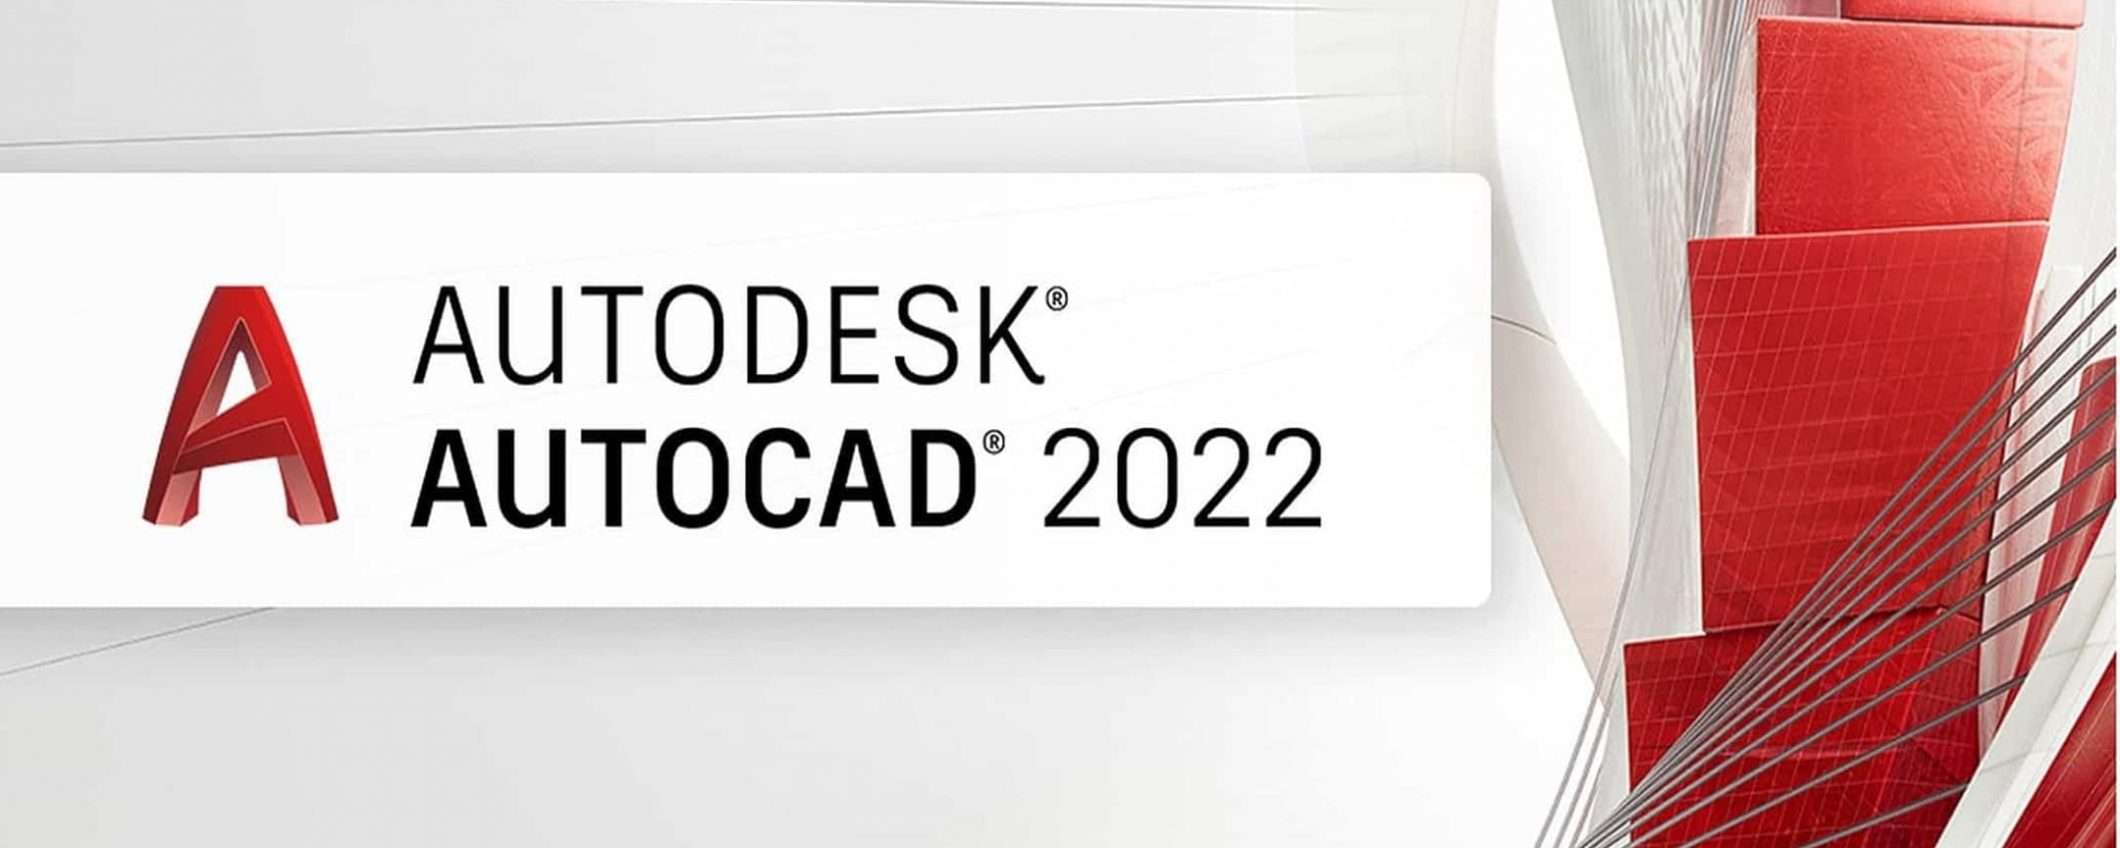 Software Autodesk in sconto del 15%: da AutoCAD a Fusion 360